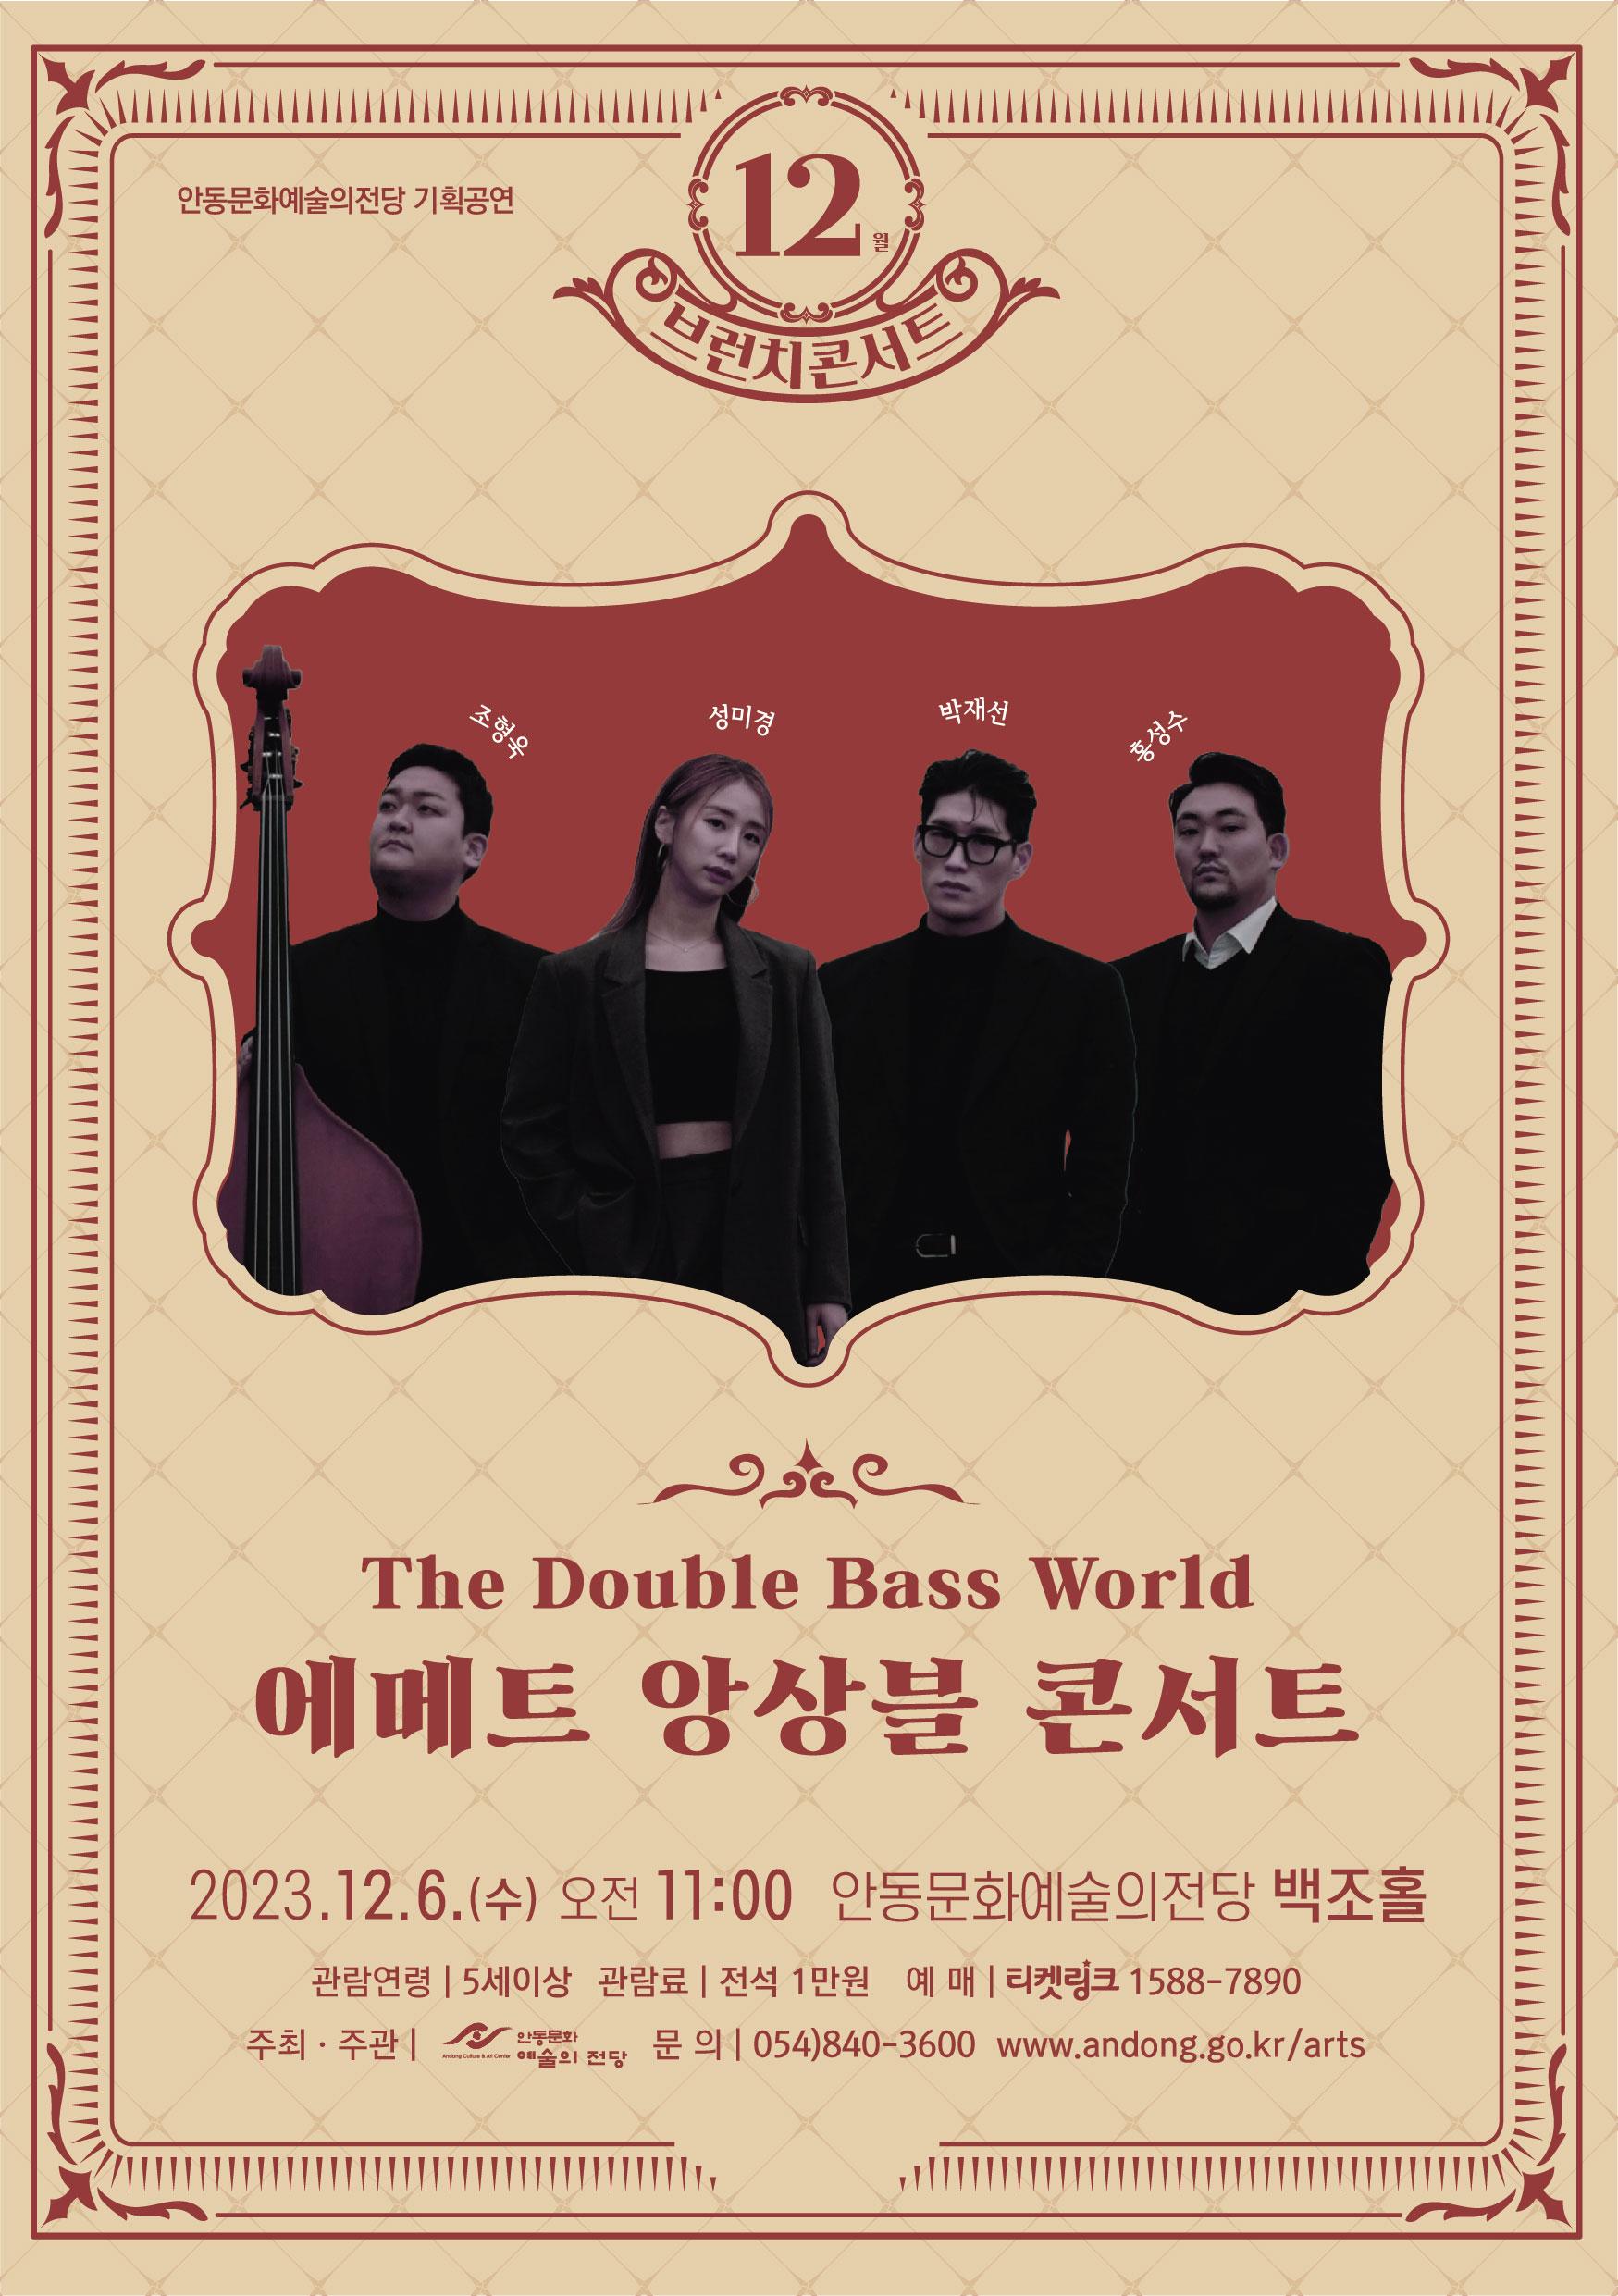 「コントラバスの世界」 ブランチコンサート - 安東のエメスアンサンブルのポスター